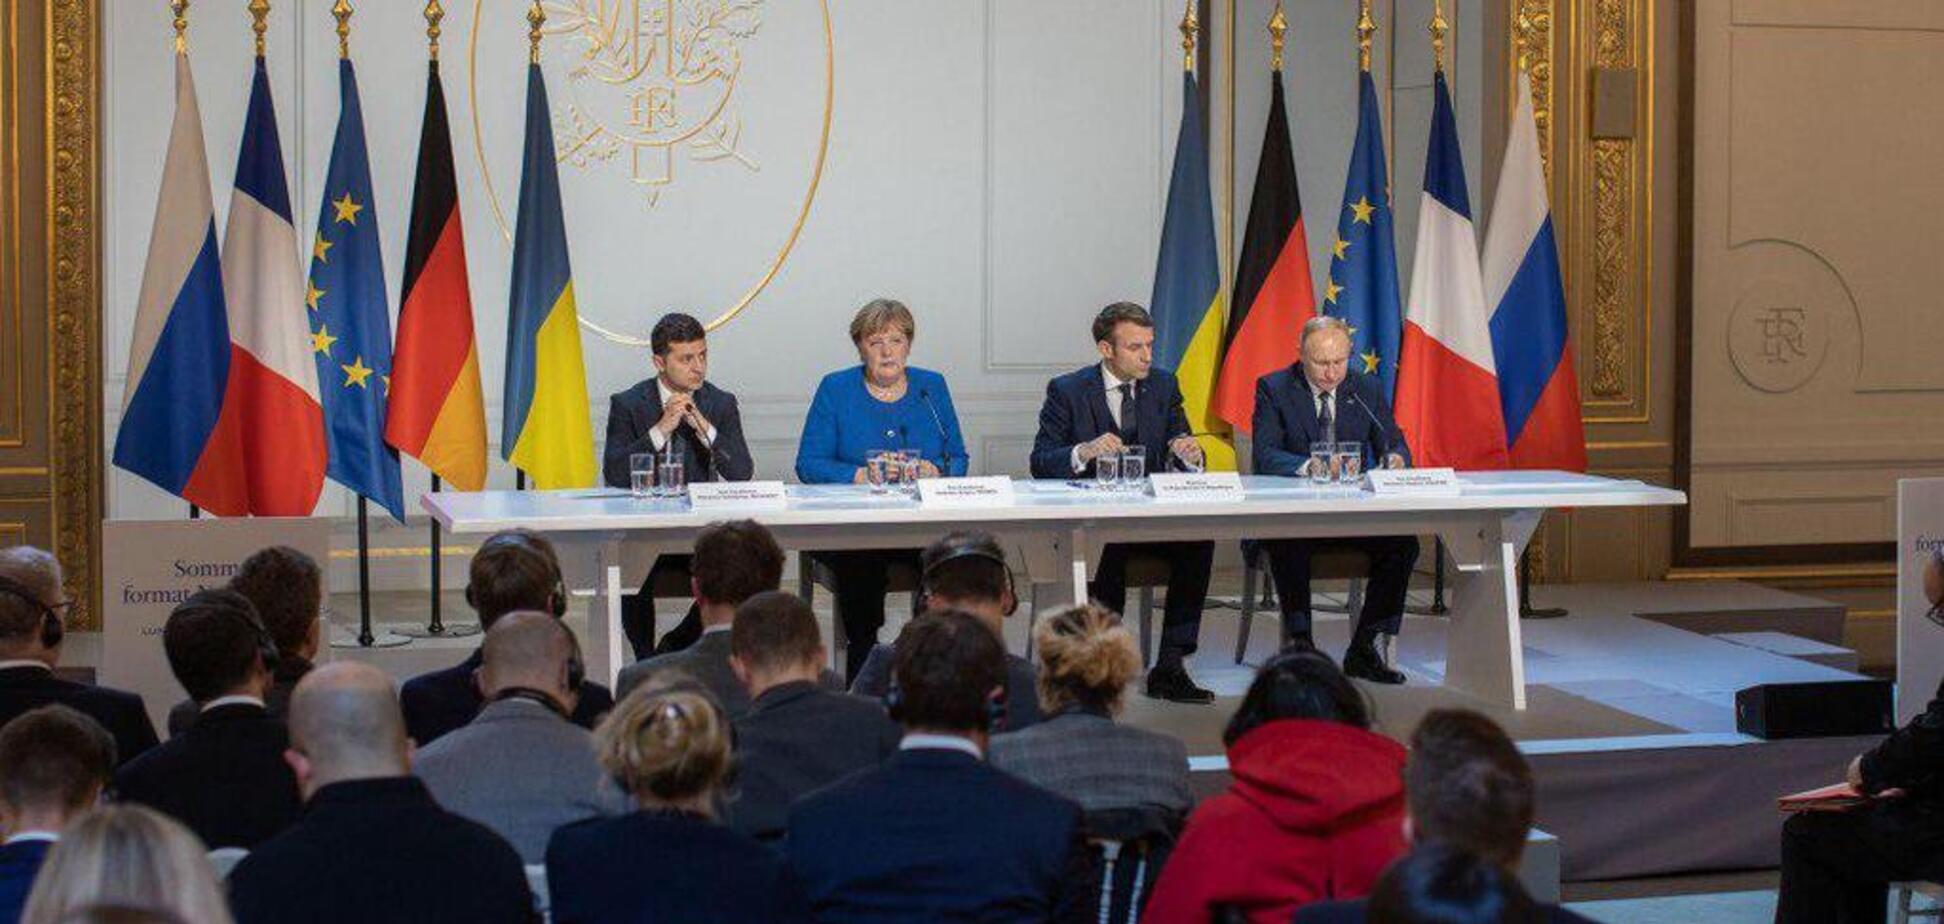 Зеленський, Путін, Меркель і Макрон дали пресконференцію: всі подробиці, фото й відео